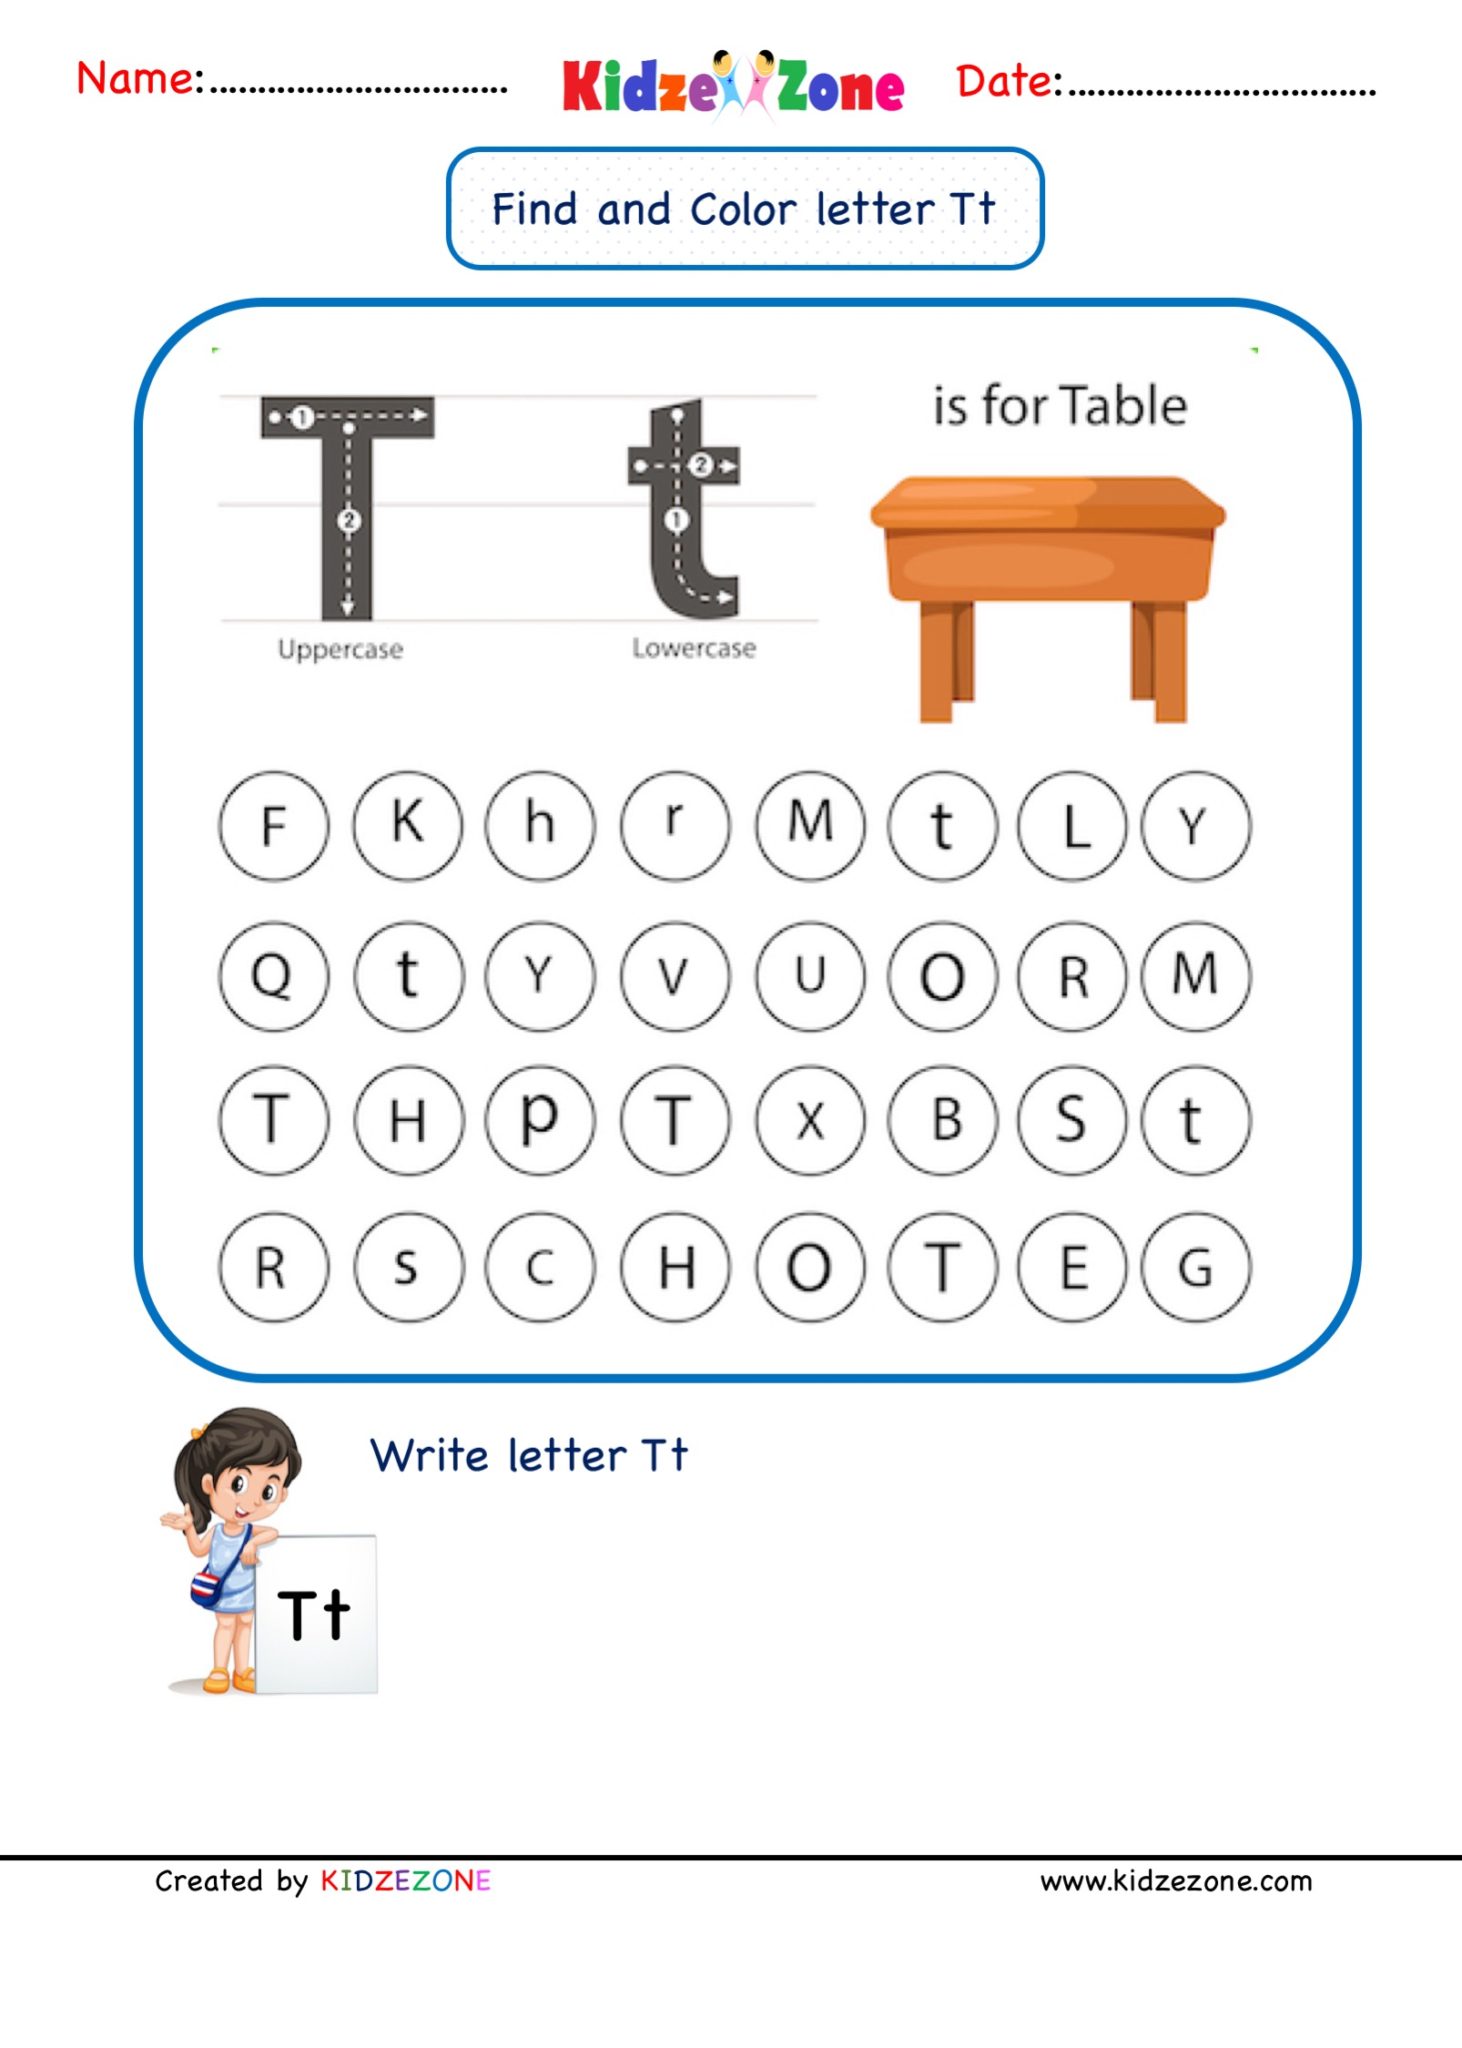 kindergarten-letter-t-find-and-color-worksheet-kidzezone